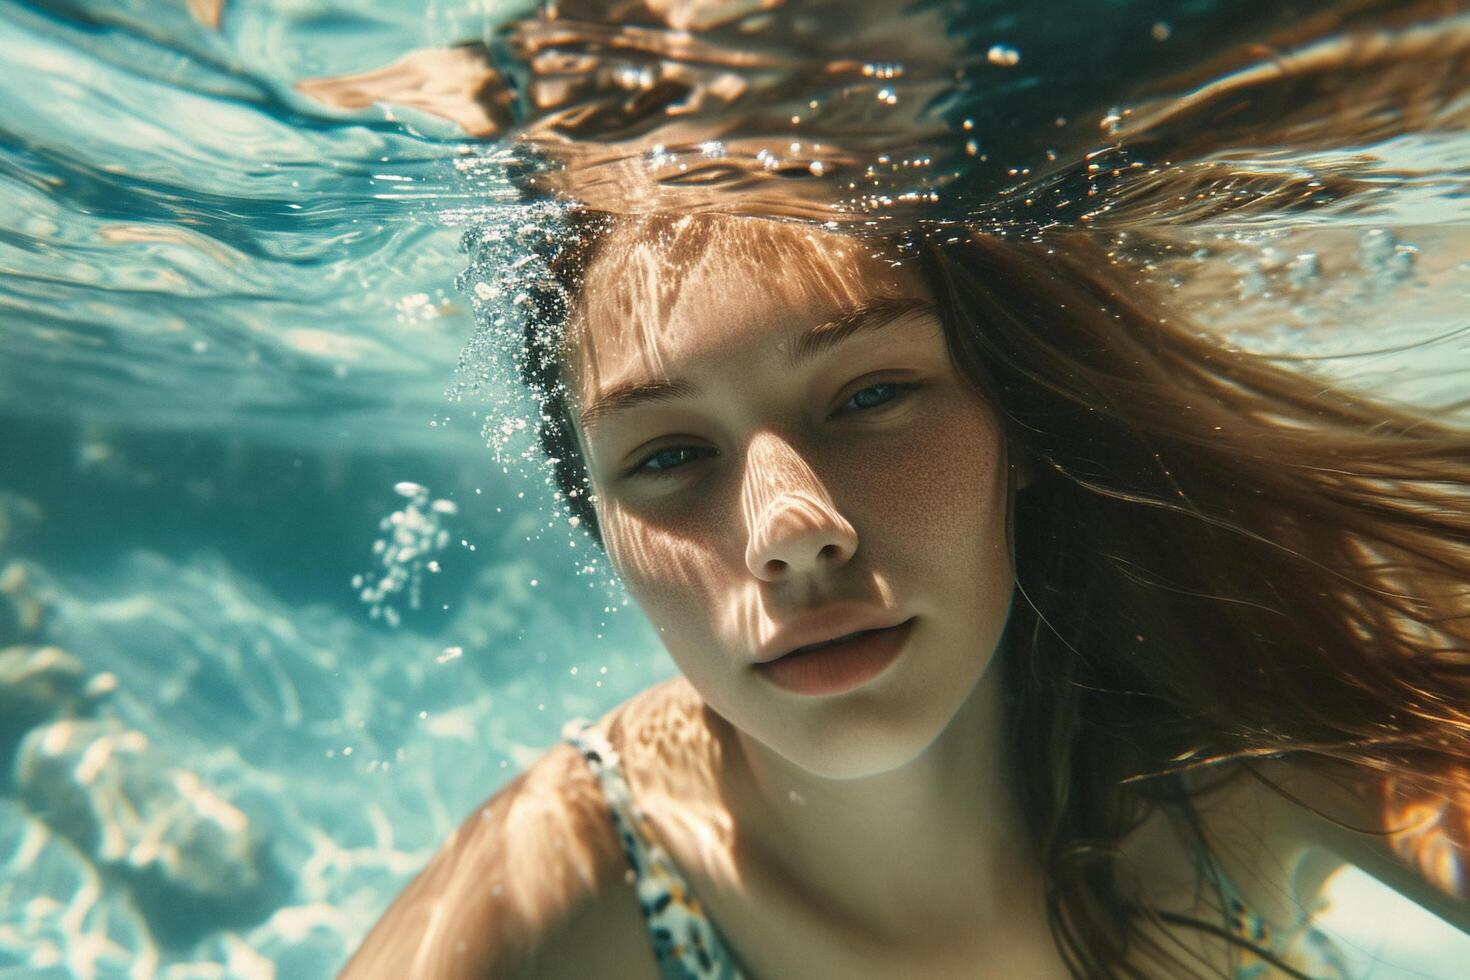 ai gerado embaixo da agua retrato do jovem fêmea nadador. foto